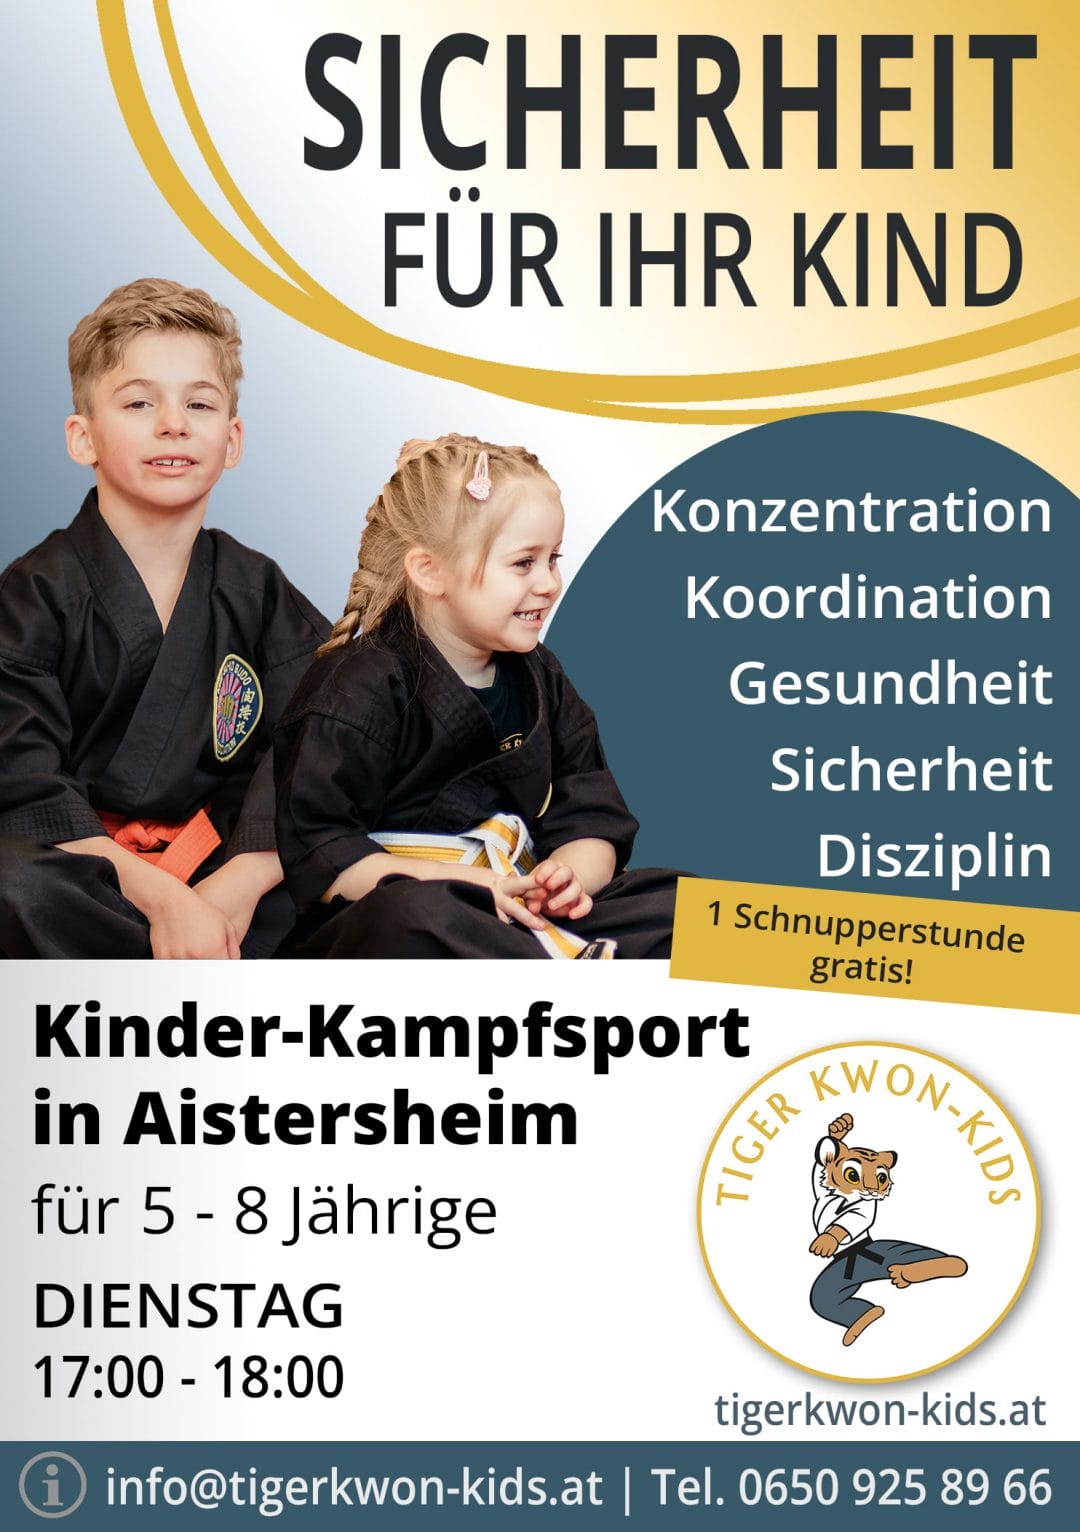 Flyer des Tiger Kwon - Kids Standorts in Aistersheim mit Informationen zu Trainingsort und -zeit, illustriert durch fröhliche Jungen und Mädchen.